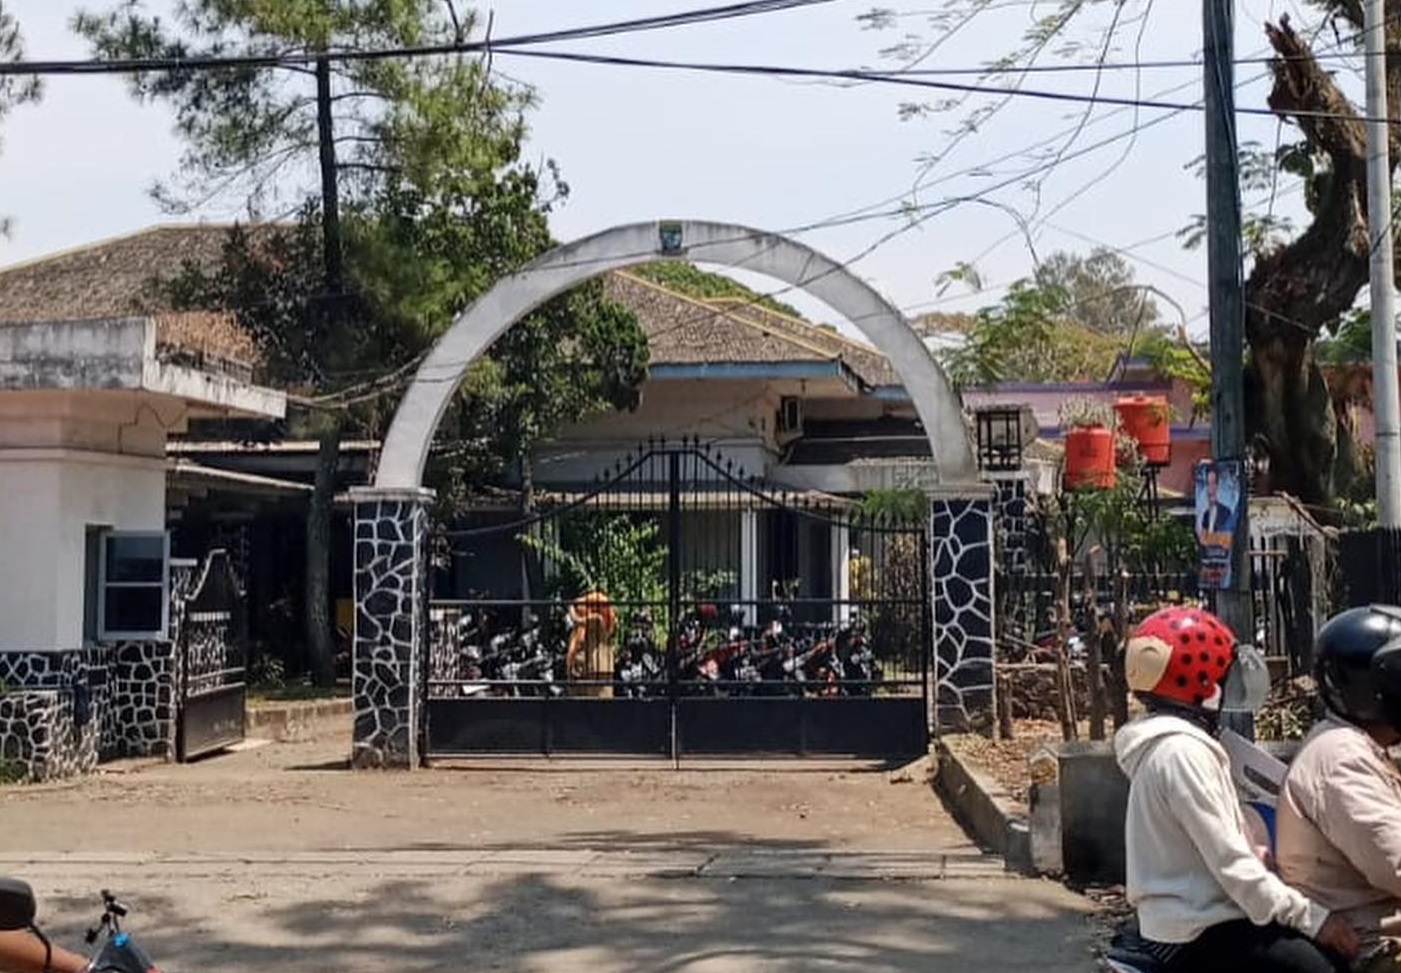 Bangunan Heritage peninggalan sejarah yang kini menjadi Rumah Potong Hewan RPH Ciroyom yang terletak di Jalan Arjuna Kota Bandung